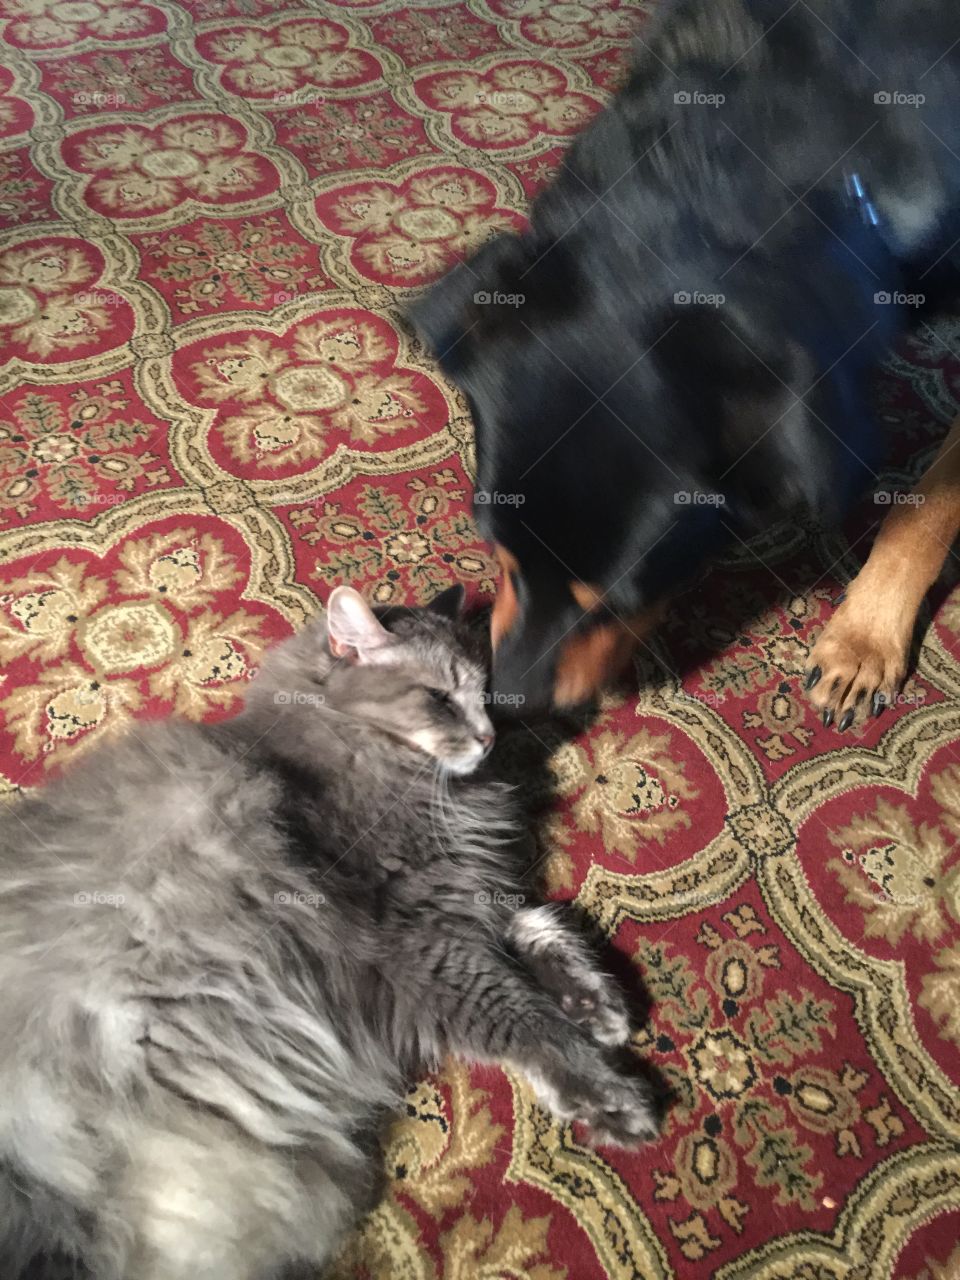 Basil (dog) kissing Siri (cat)